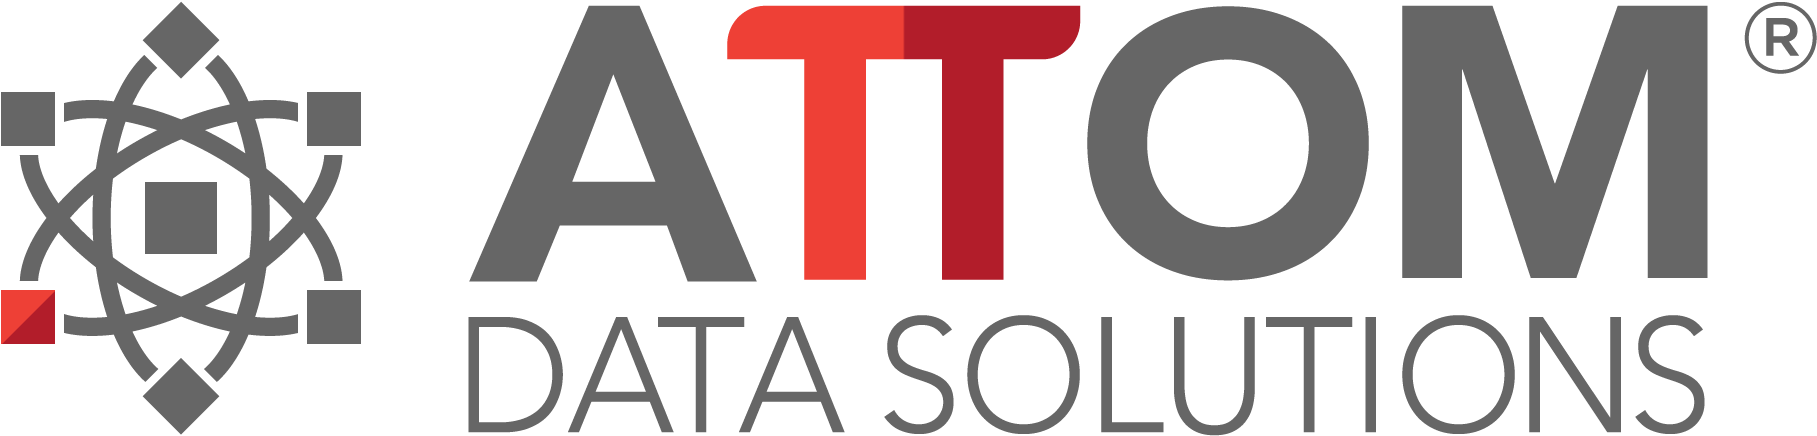 attom data solutions logo